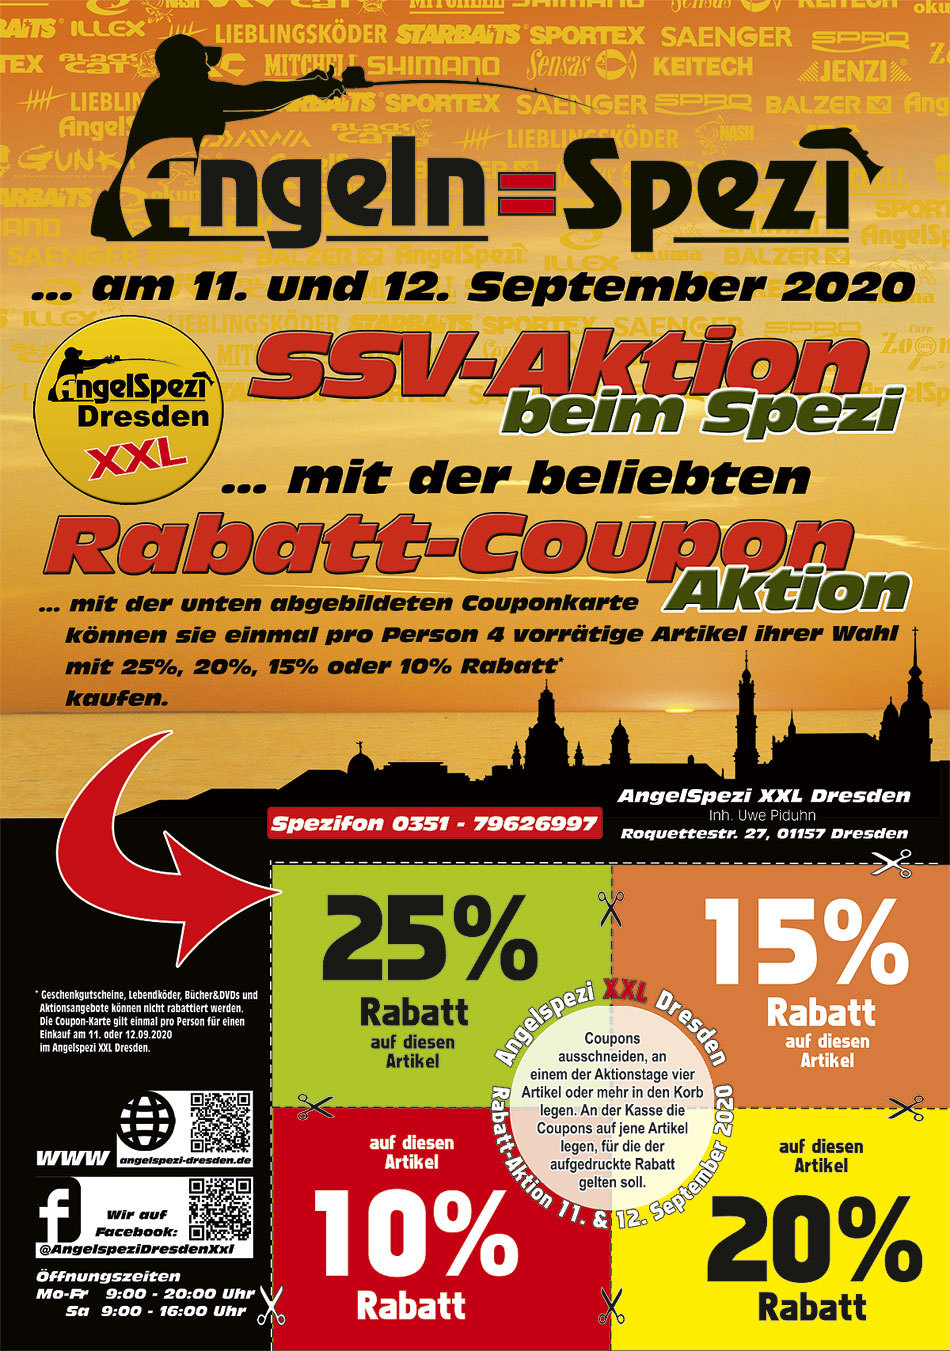 SSV Coupon-Rabatt-Aktion im Angelspezi XXL Dresden am 11. und 12. September 2020